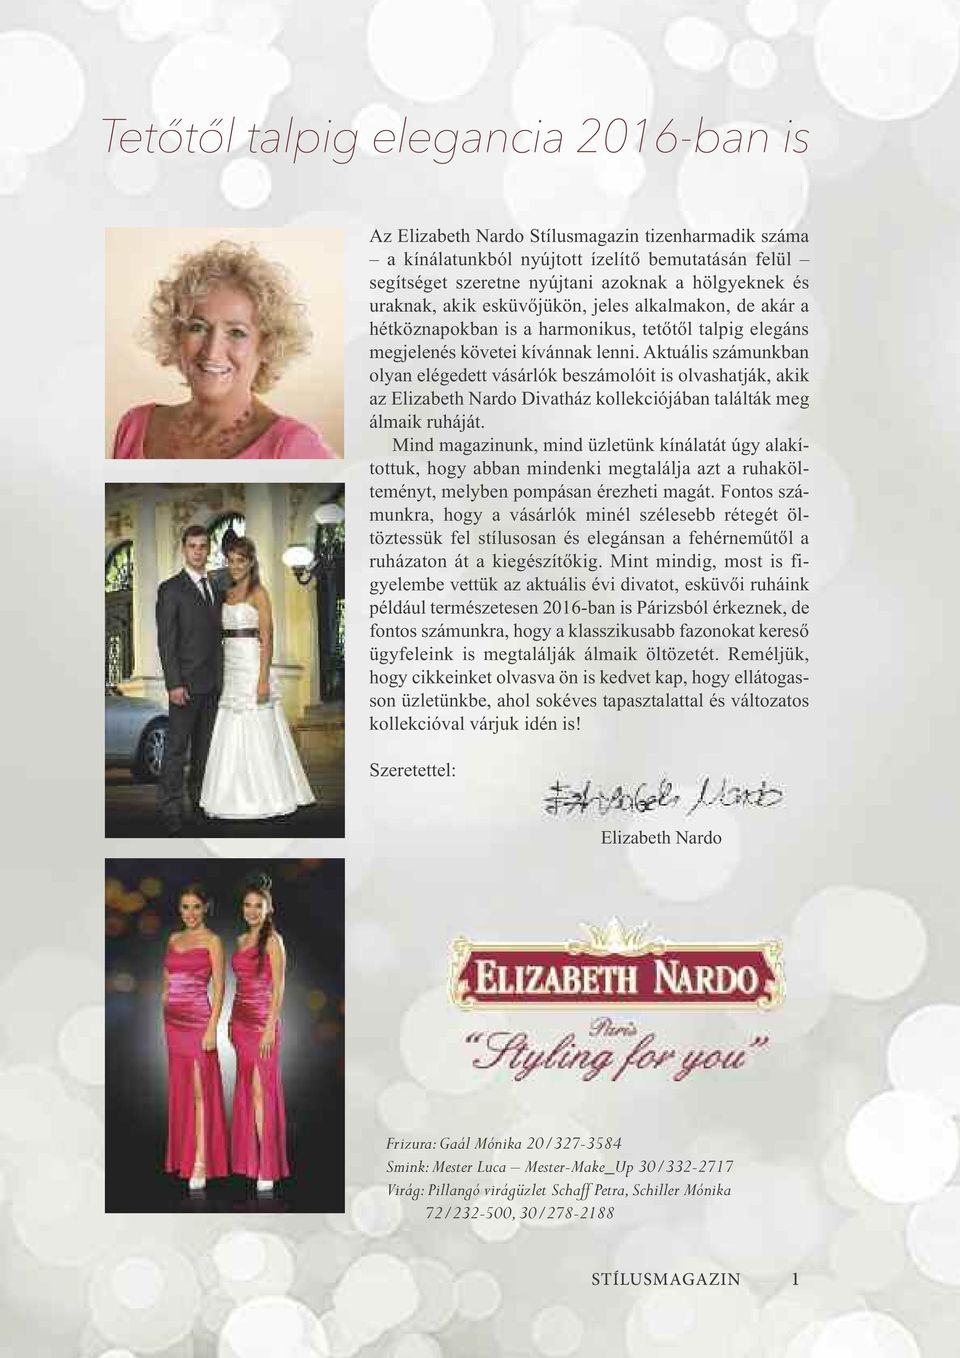 Aktuális számunkban olyan elégedett vásárlók beszámolóit is olvashatják, akik az Elizabeth Nardo Divatház kollekciójában találták meg álmaik ruháját.